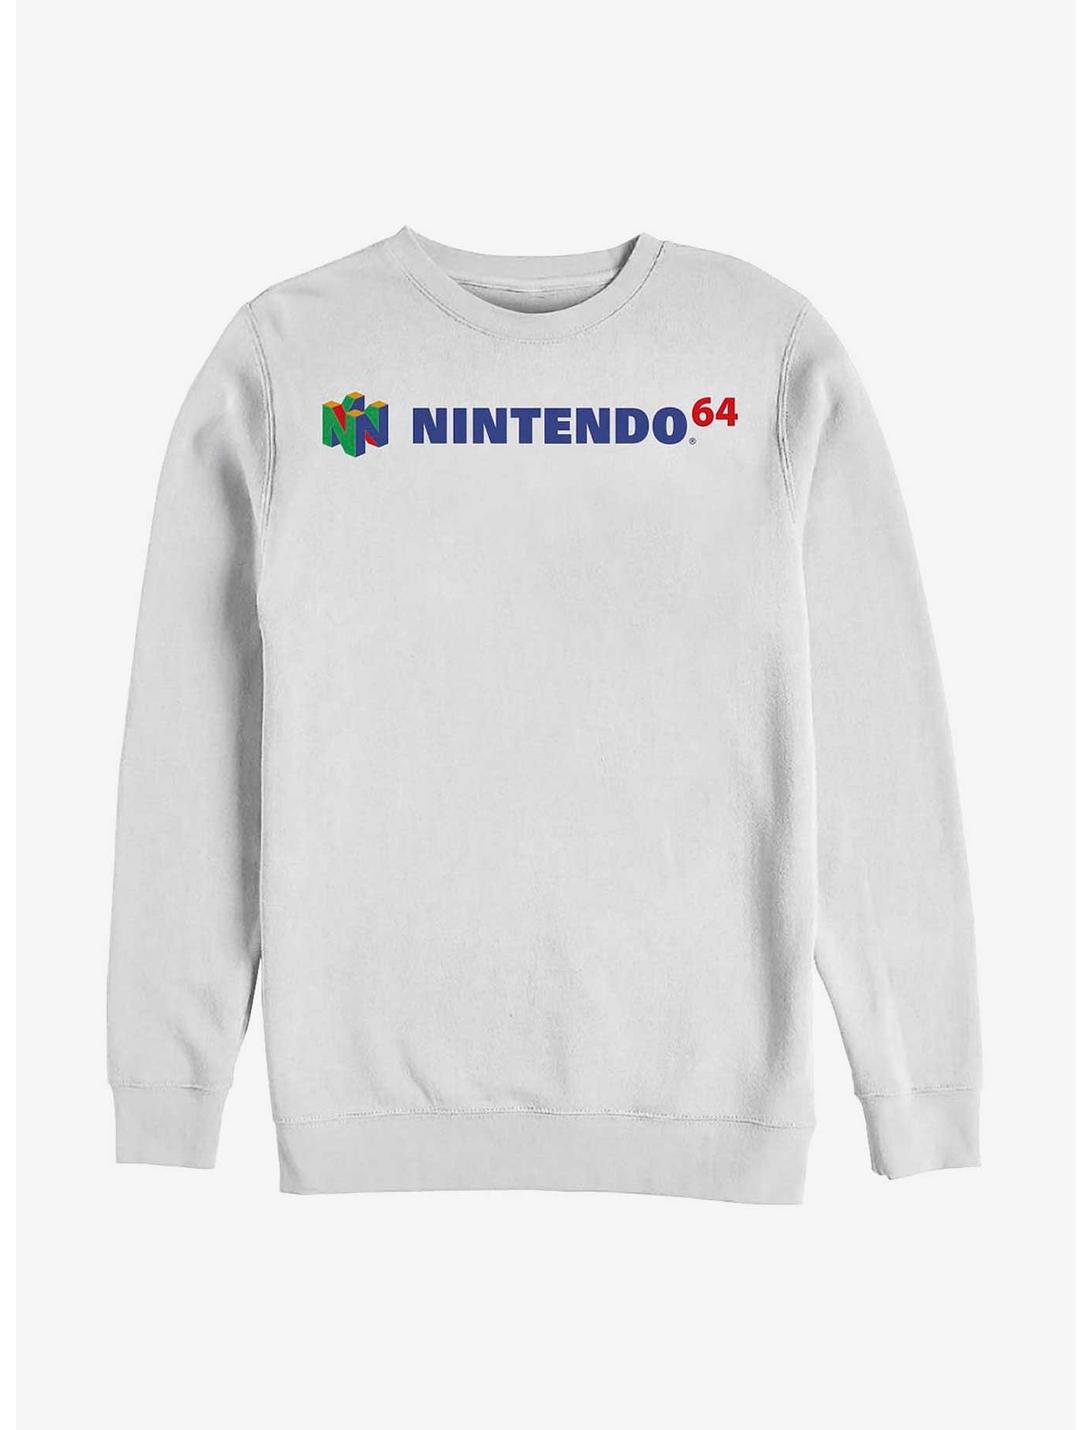 Nintendo N64 Logo Sweatshirt, WHITE, hi-res